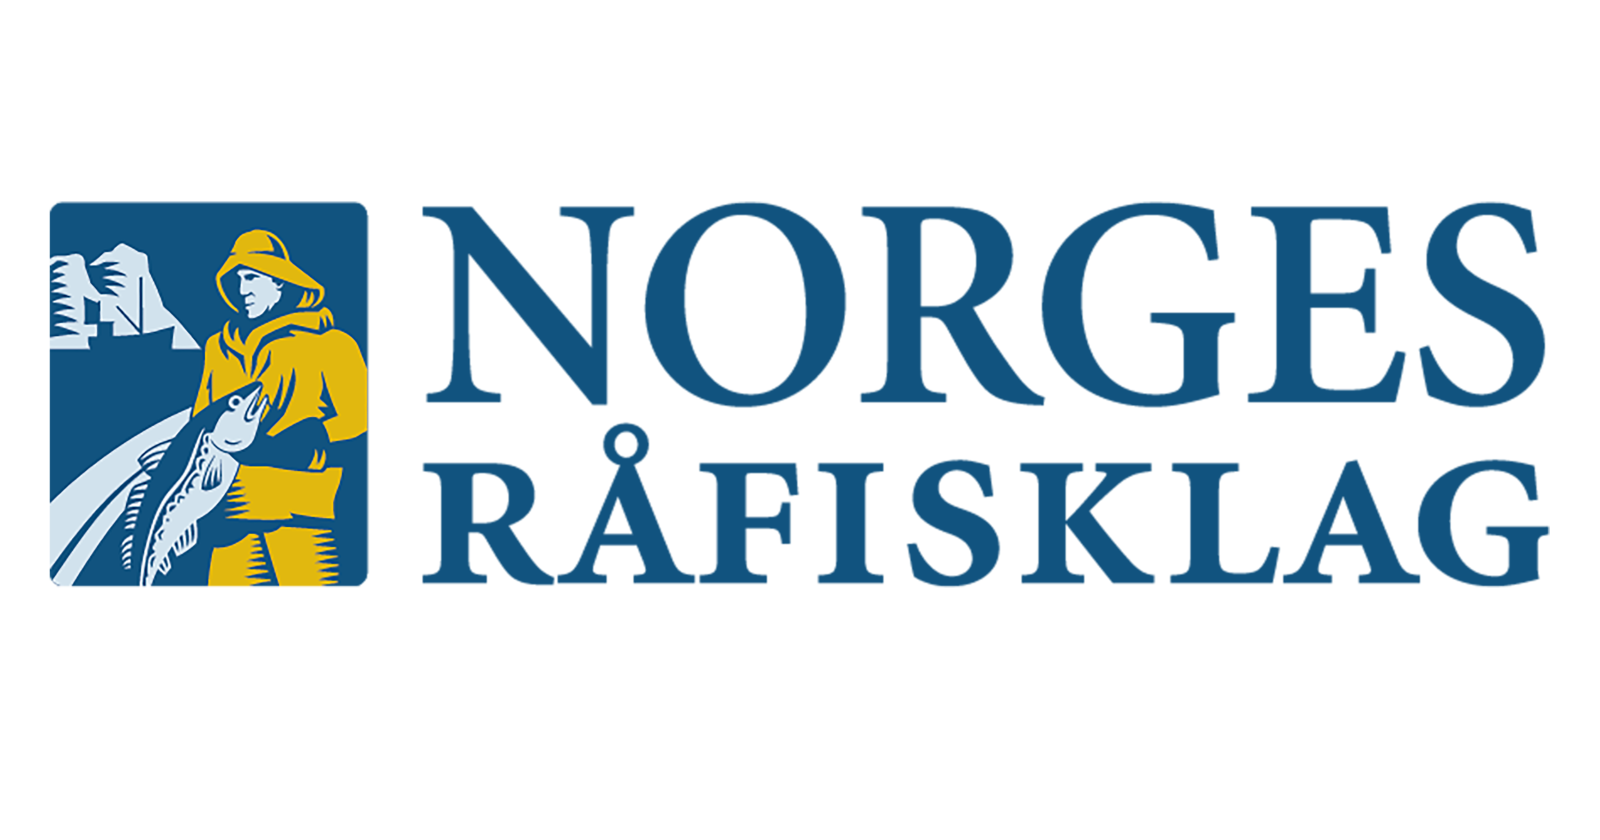 Norges råfisklag